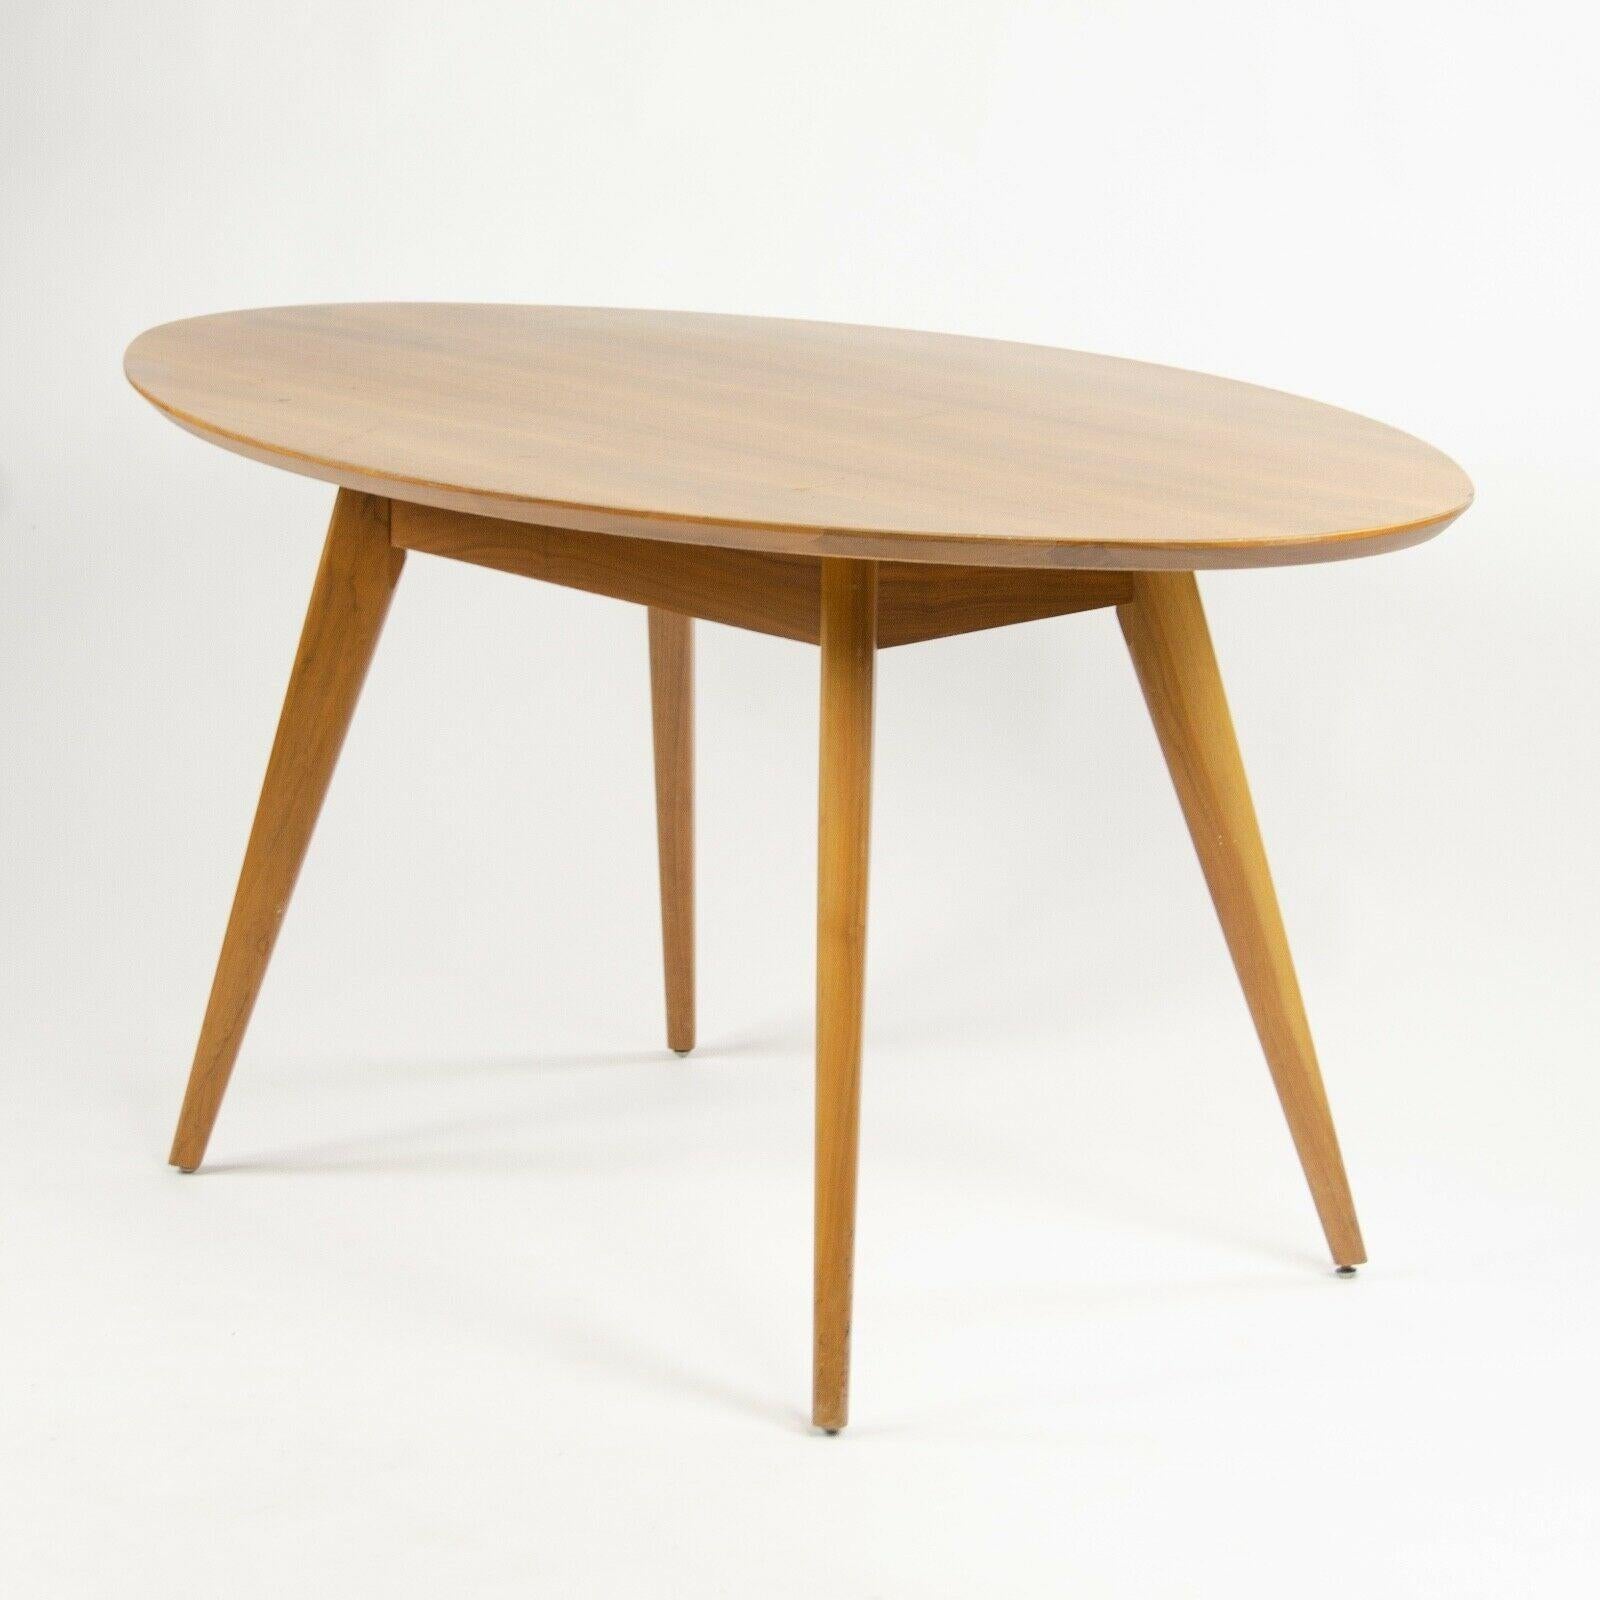 Zum Verkauf stehen originale, Anfang der 2000er Jahre bestellte Jens Risom Esstische aus Nussbaumholz / Café-Tische. Die Tische wurden von Knoll International hergestellt und sind in sehr gutem Zustand.
Der angegebene Preis gilt für einen Tisch. Es